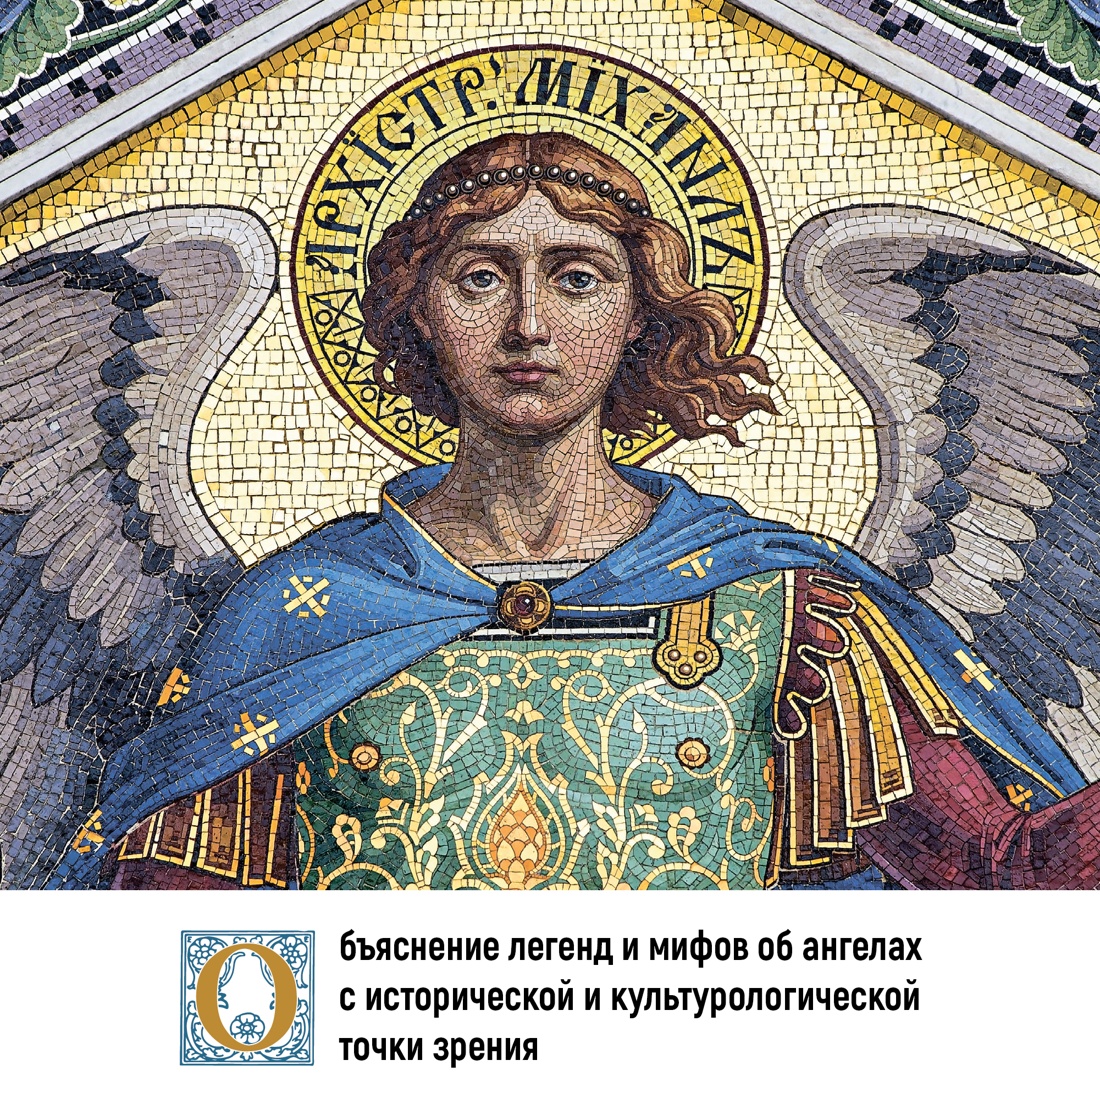 Промо материал к книге "Ангелы в религии, искусстве и психологии" №2